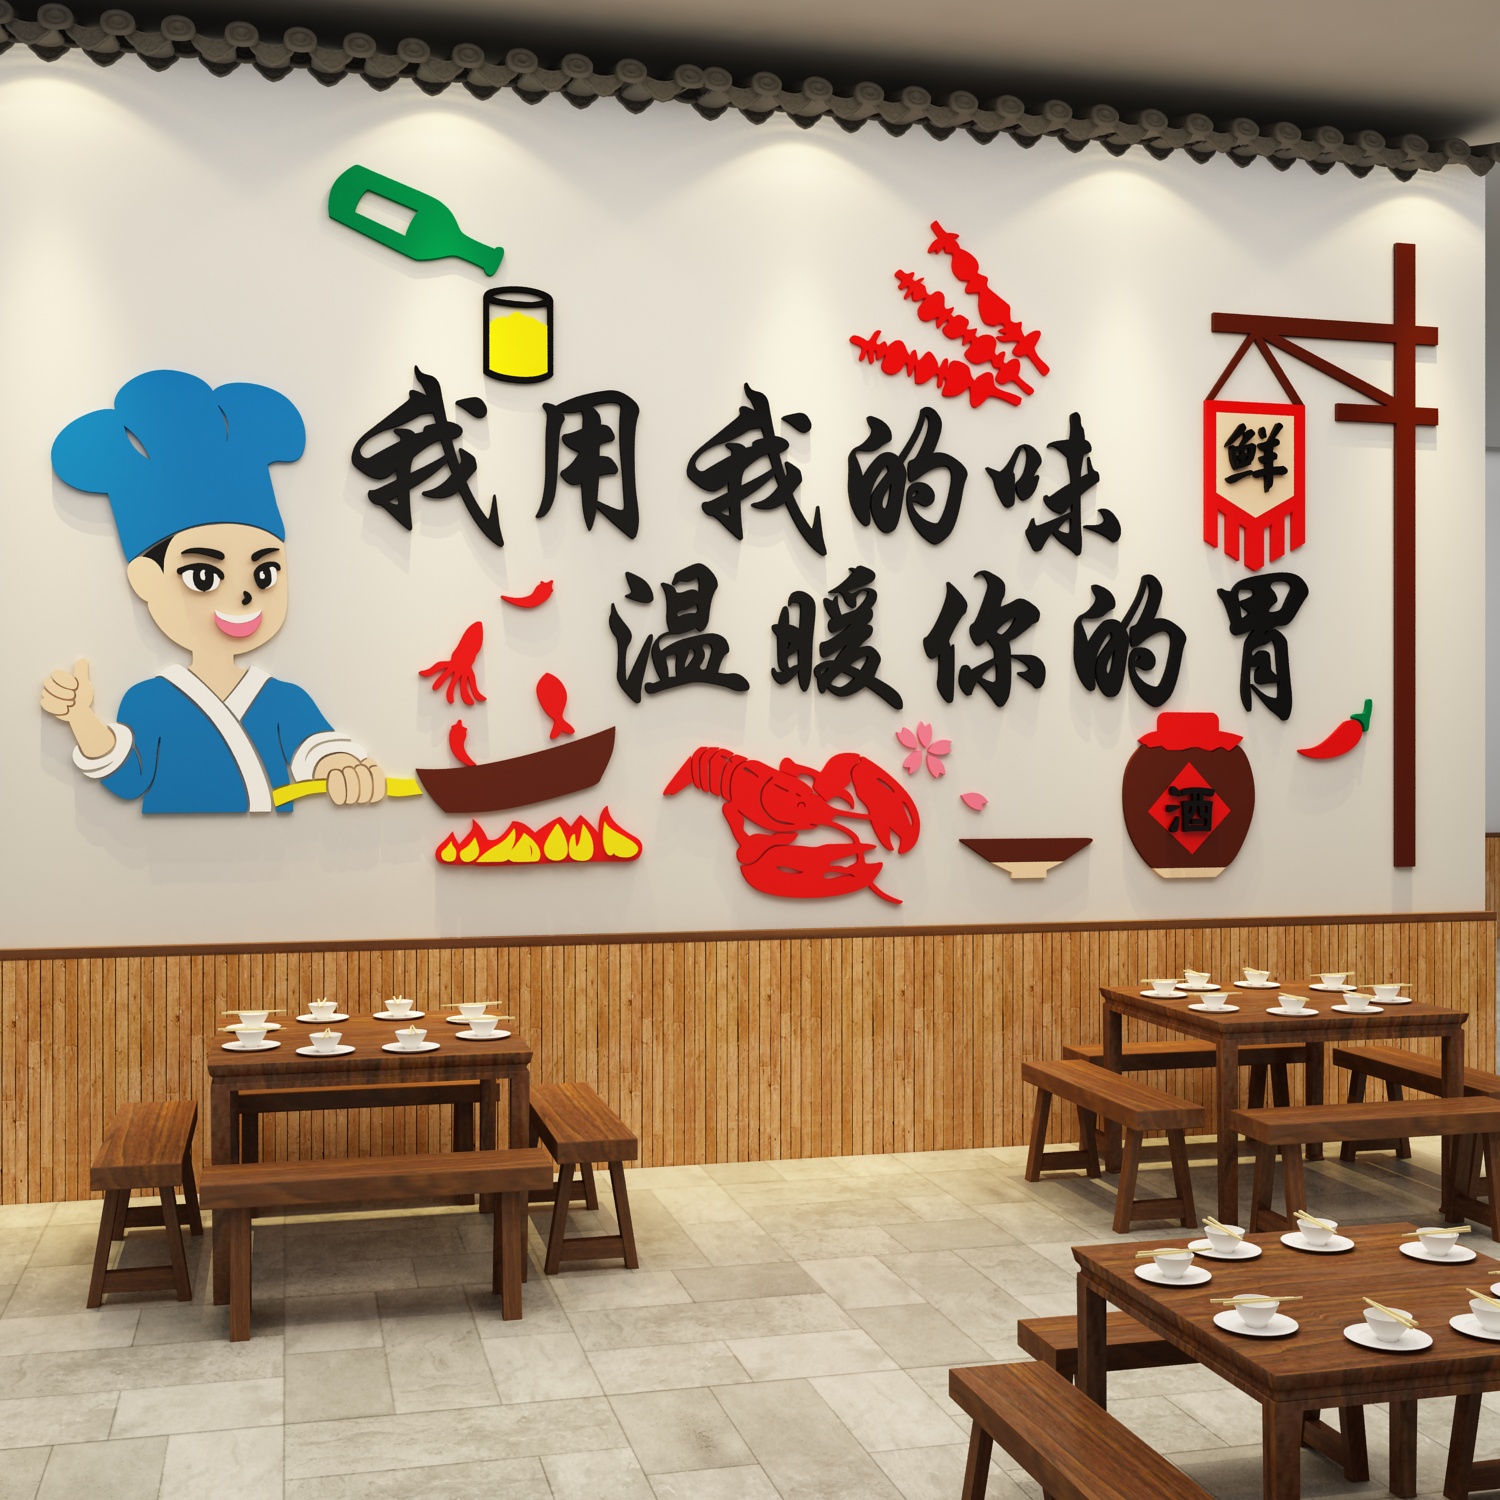 饭店墙面装饰品农家乐村小院东北风格铁锅炖餐饮文化背景墙画布置